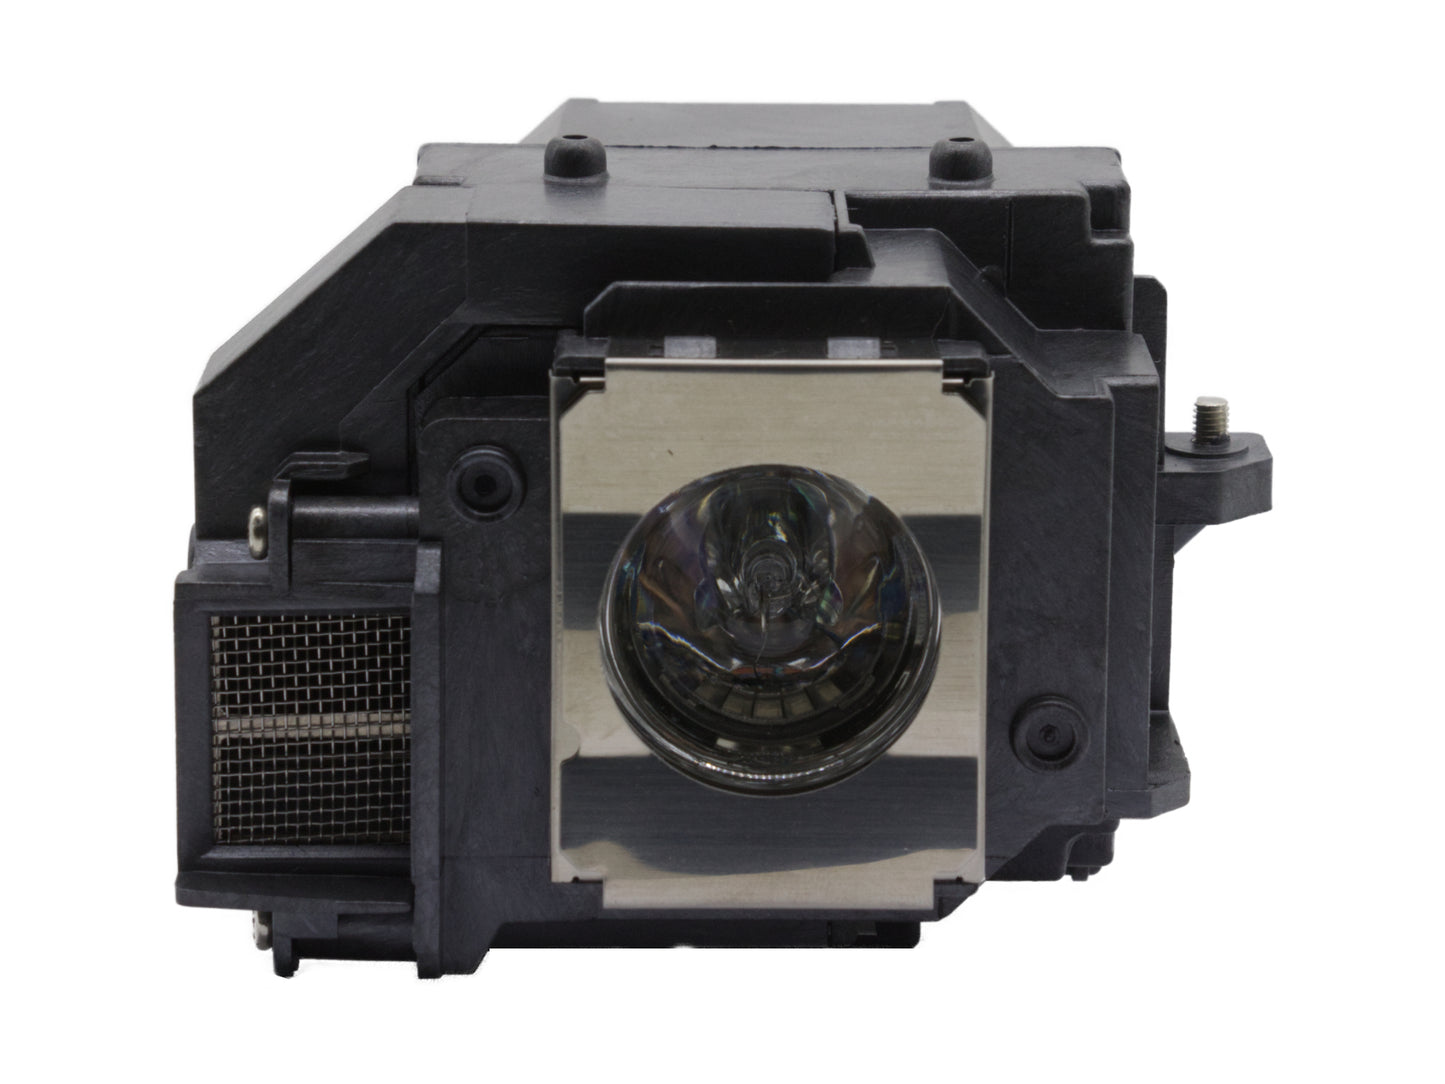 azurano Beamerlampe kompatibel mit EPSON ELPLP54, V13H010L54 für Epson EH-TW450, EMP, EB-Serie, PowerLite-Serie, EX-Serie, Ersatzlampe mit Gehäuse, 200W - Bild 7